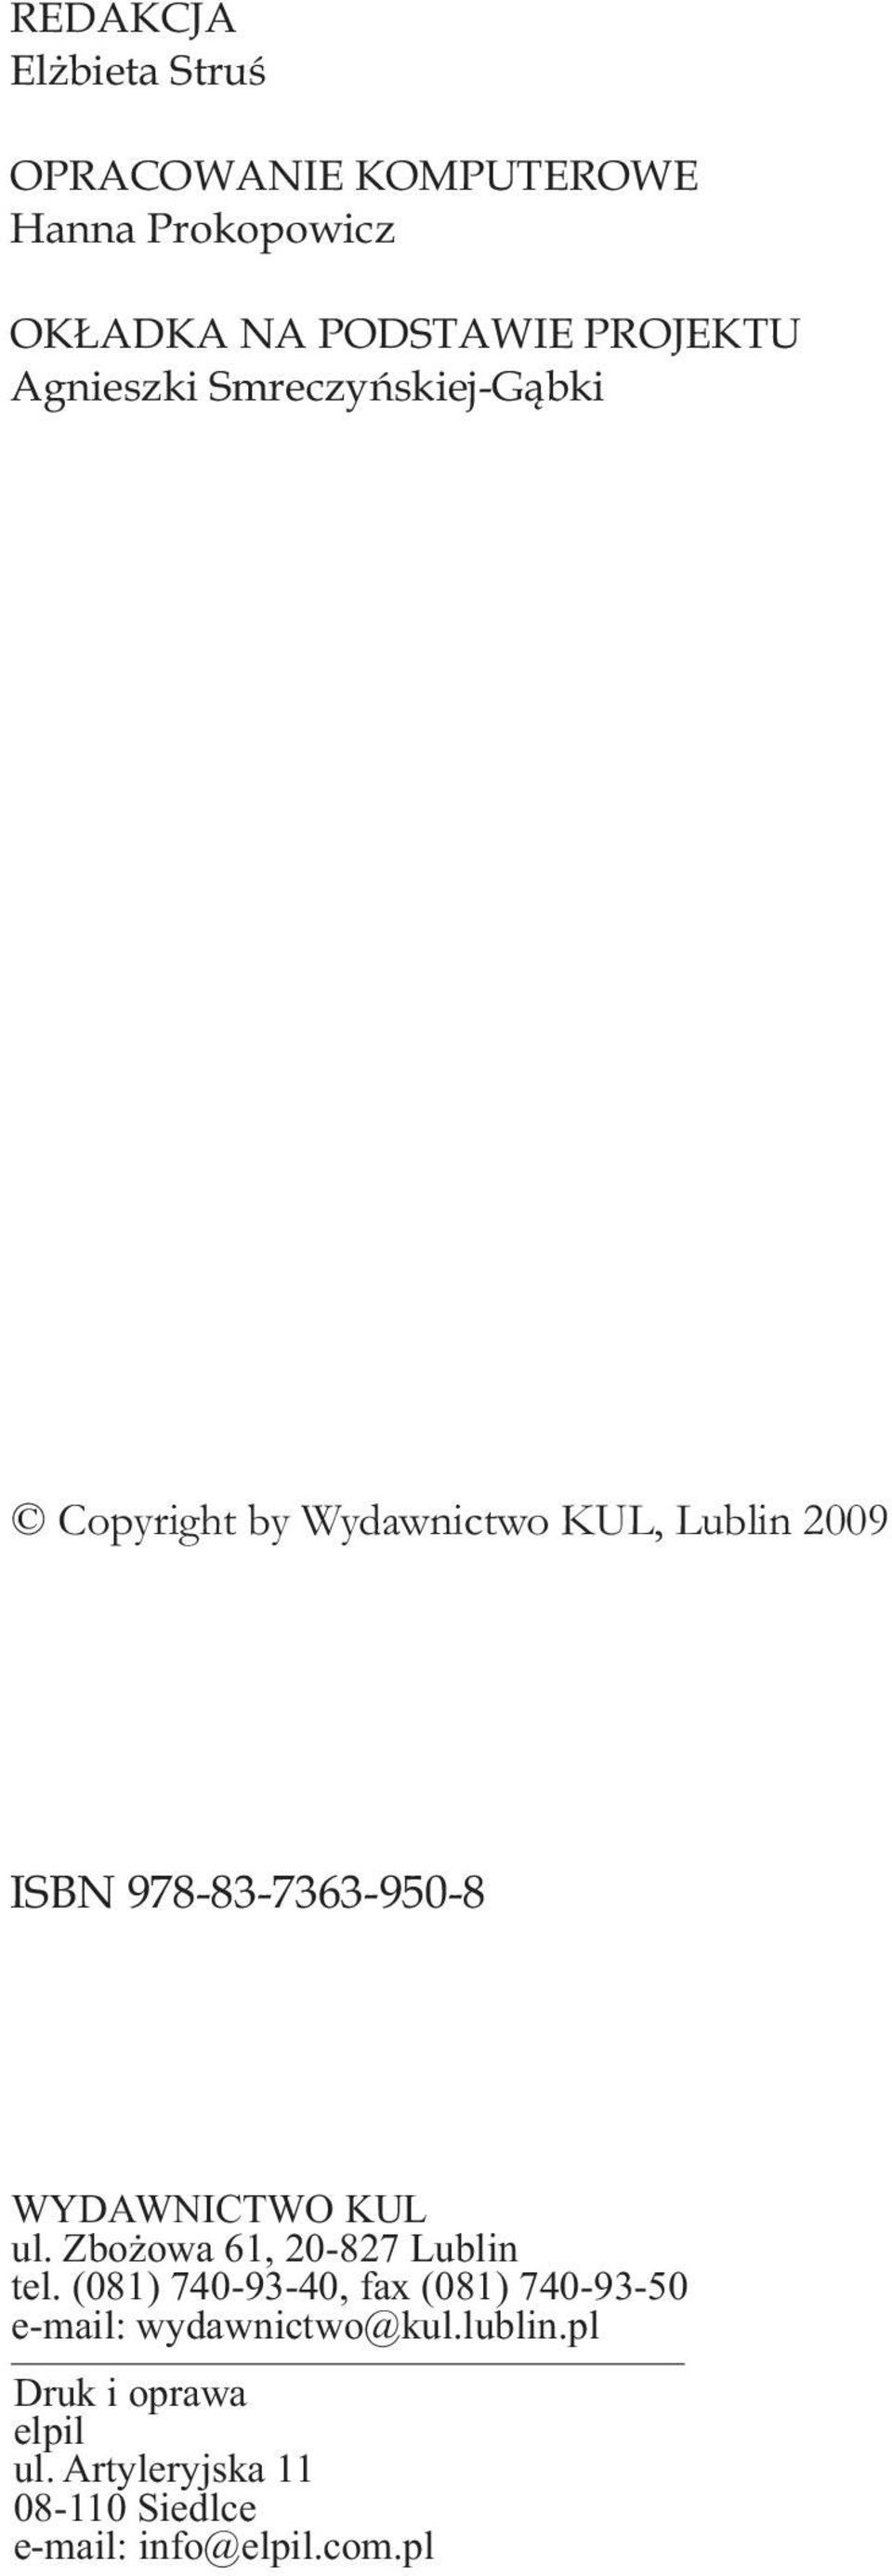 WYDAWNICTWO KUL ul. Zbożowa 61, 20-827 Lublin tel.